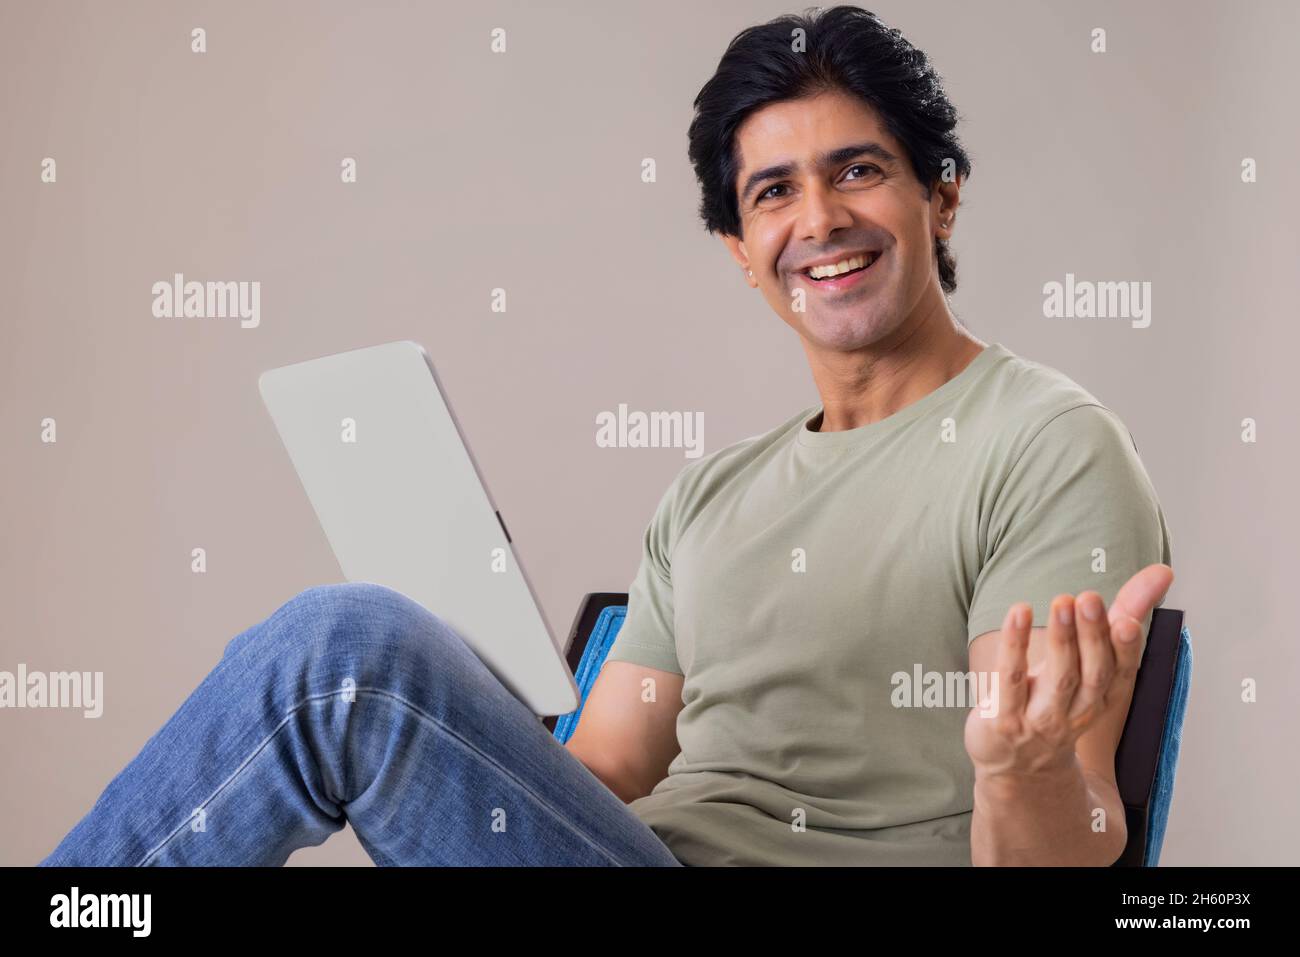 Un Indien heureux qui se pose devant l'appareil photo tout en tenant une tablette Banque D'Images